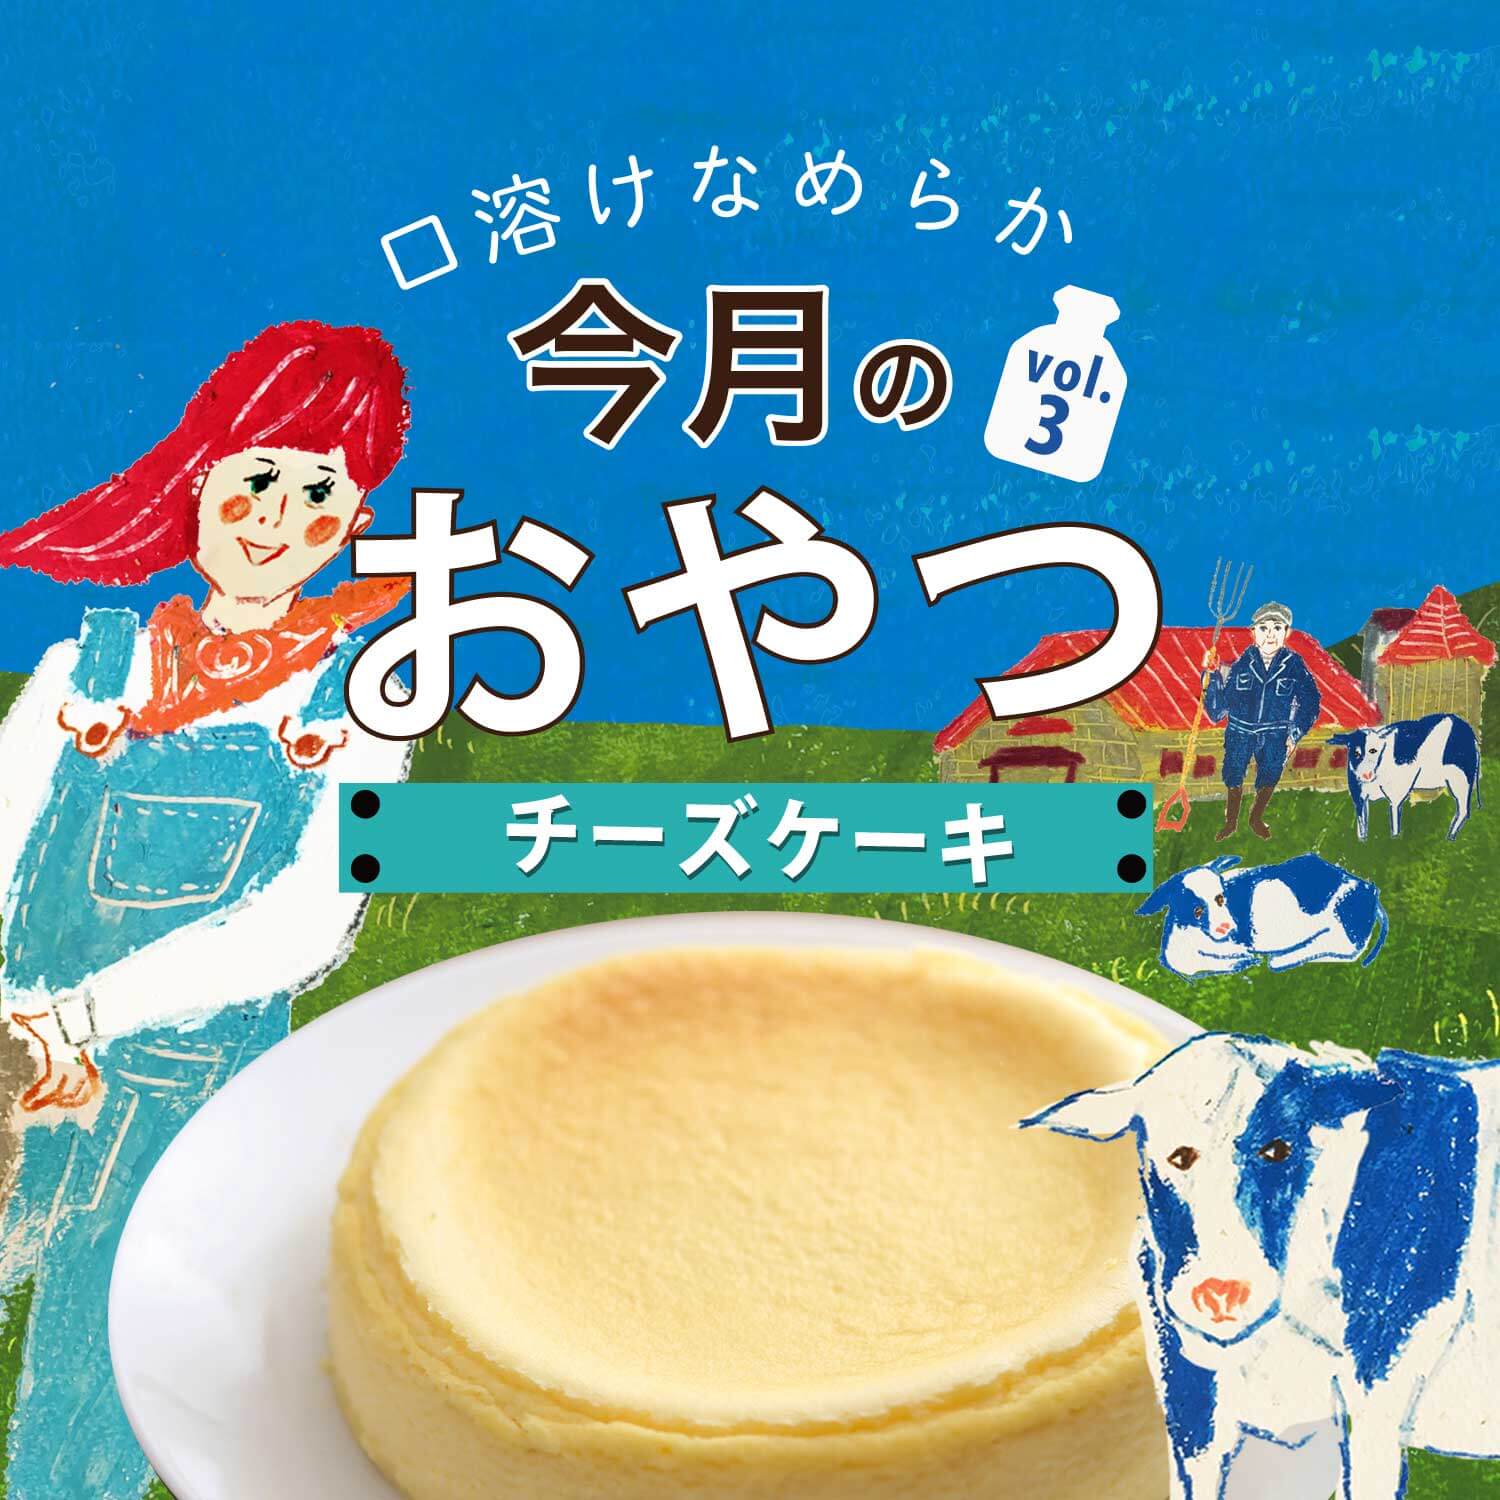 京都 滋賀のチーズケーキ 今月のおやつ Vol 3 Web Leaf